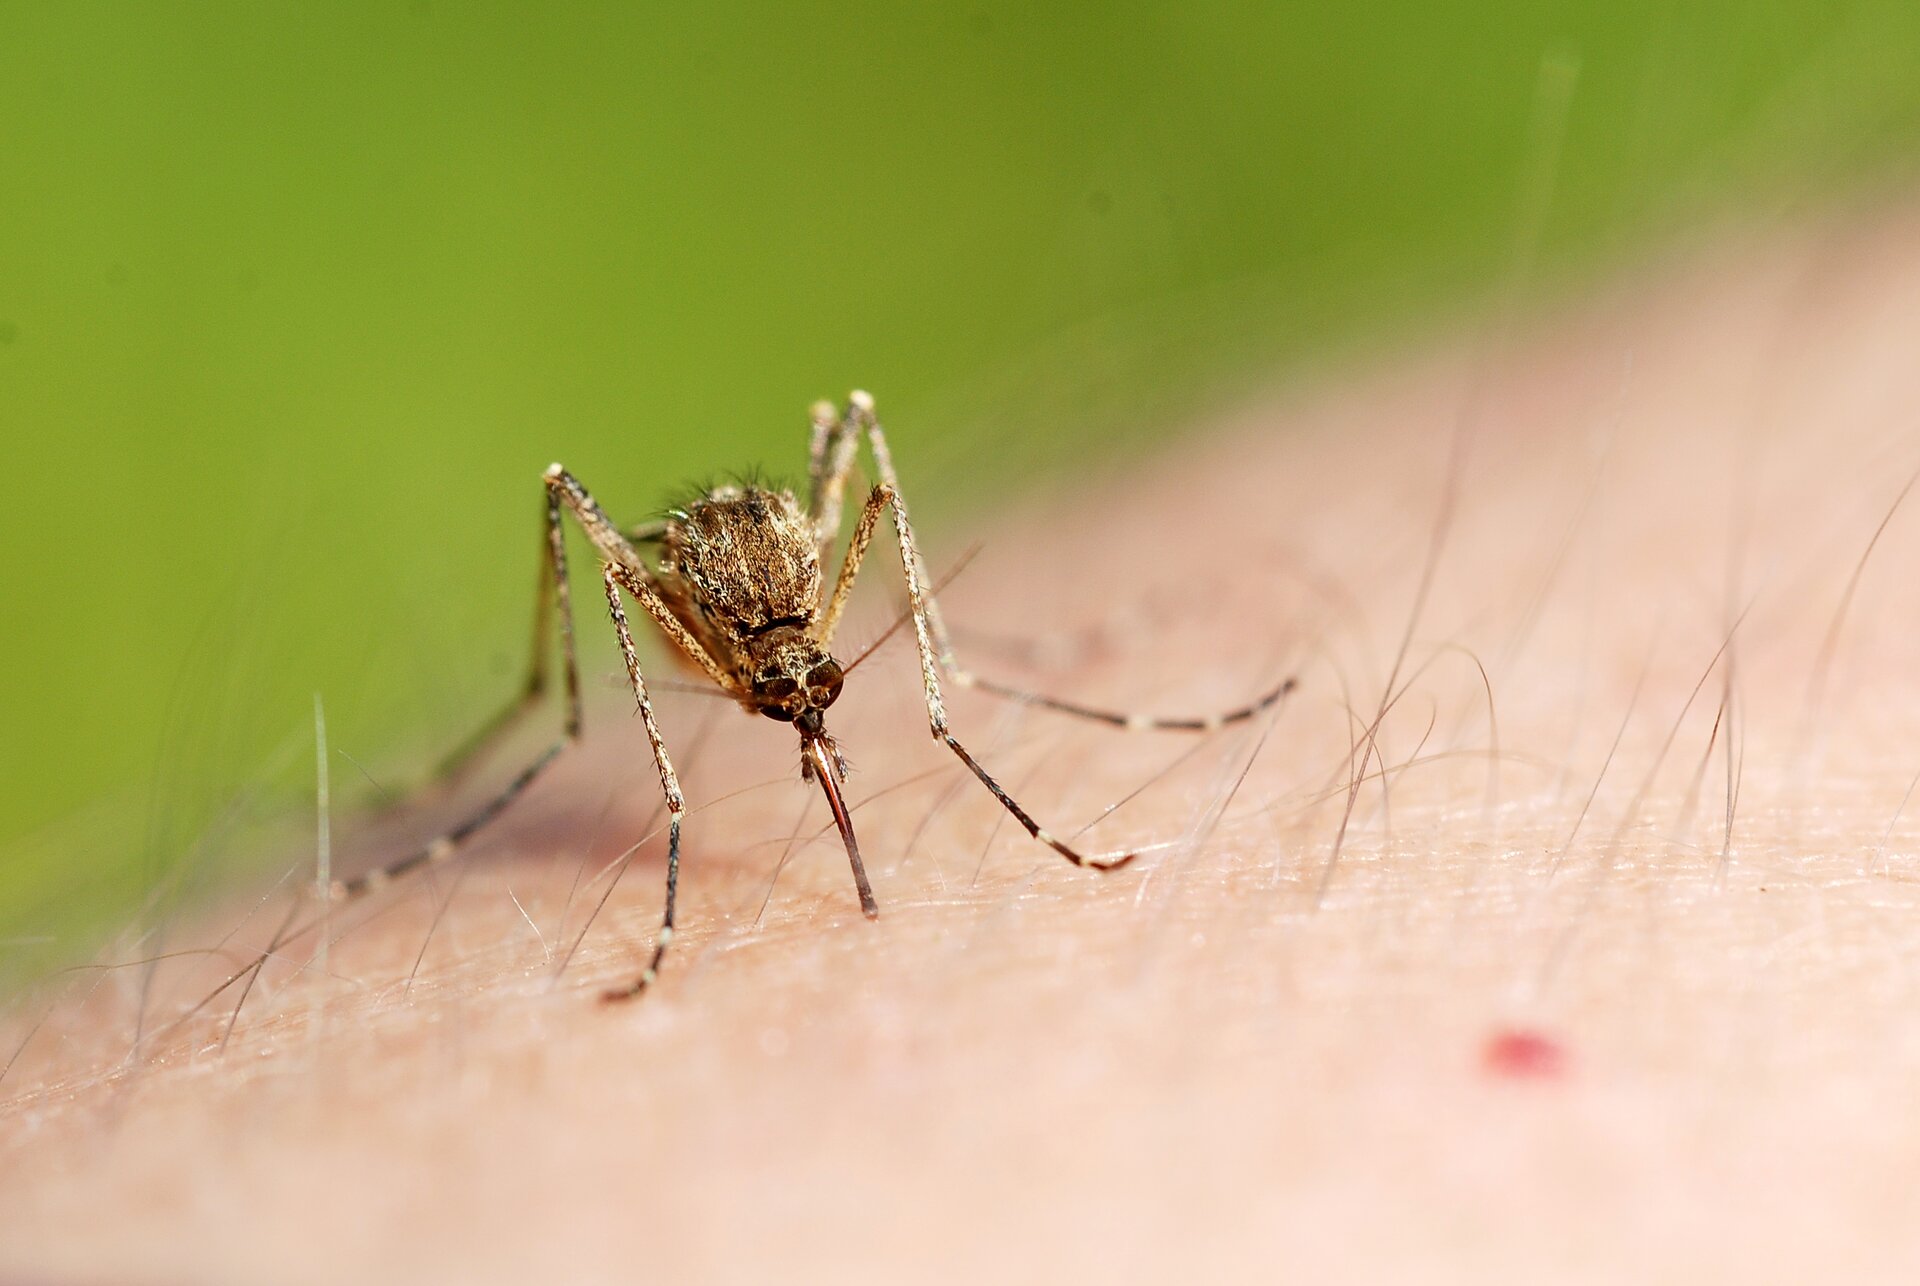 Na fotografii widoczny fragment odsłoniętej skóry człowieka, na której siedzi komar pijący krew.